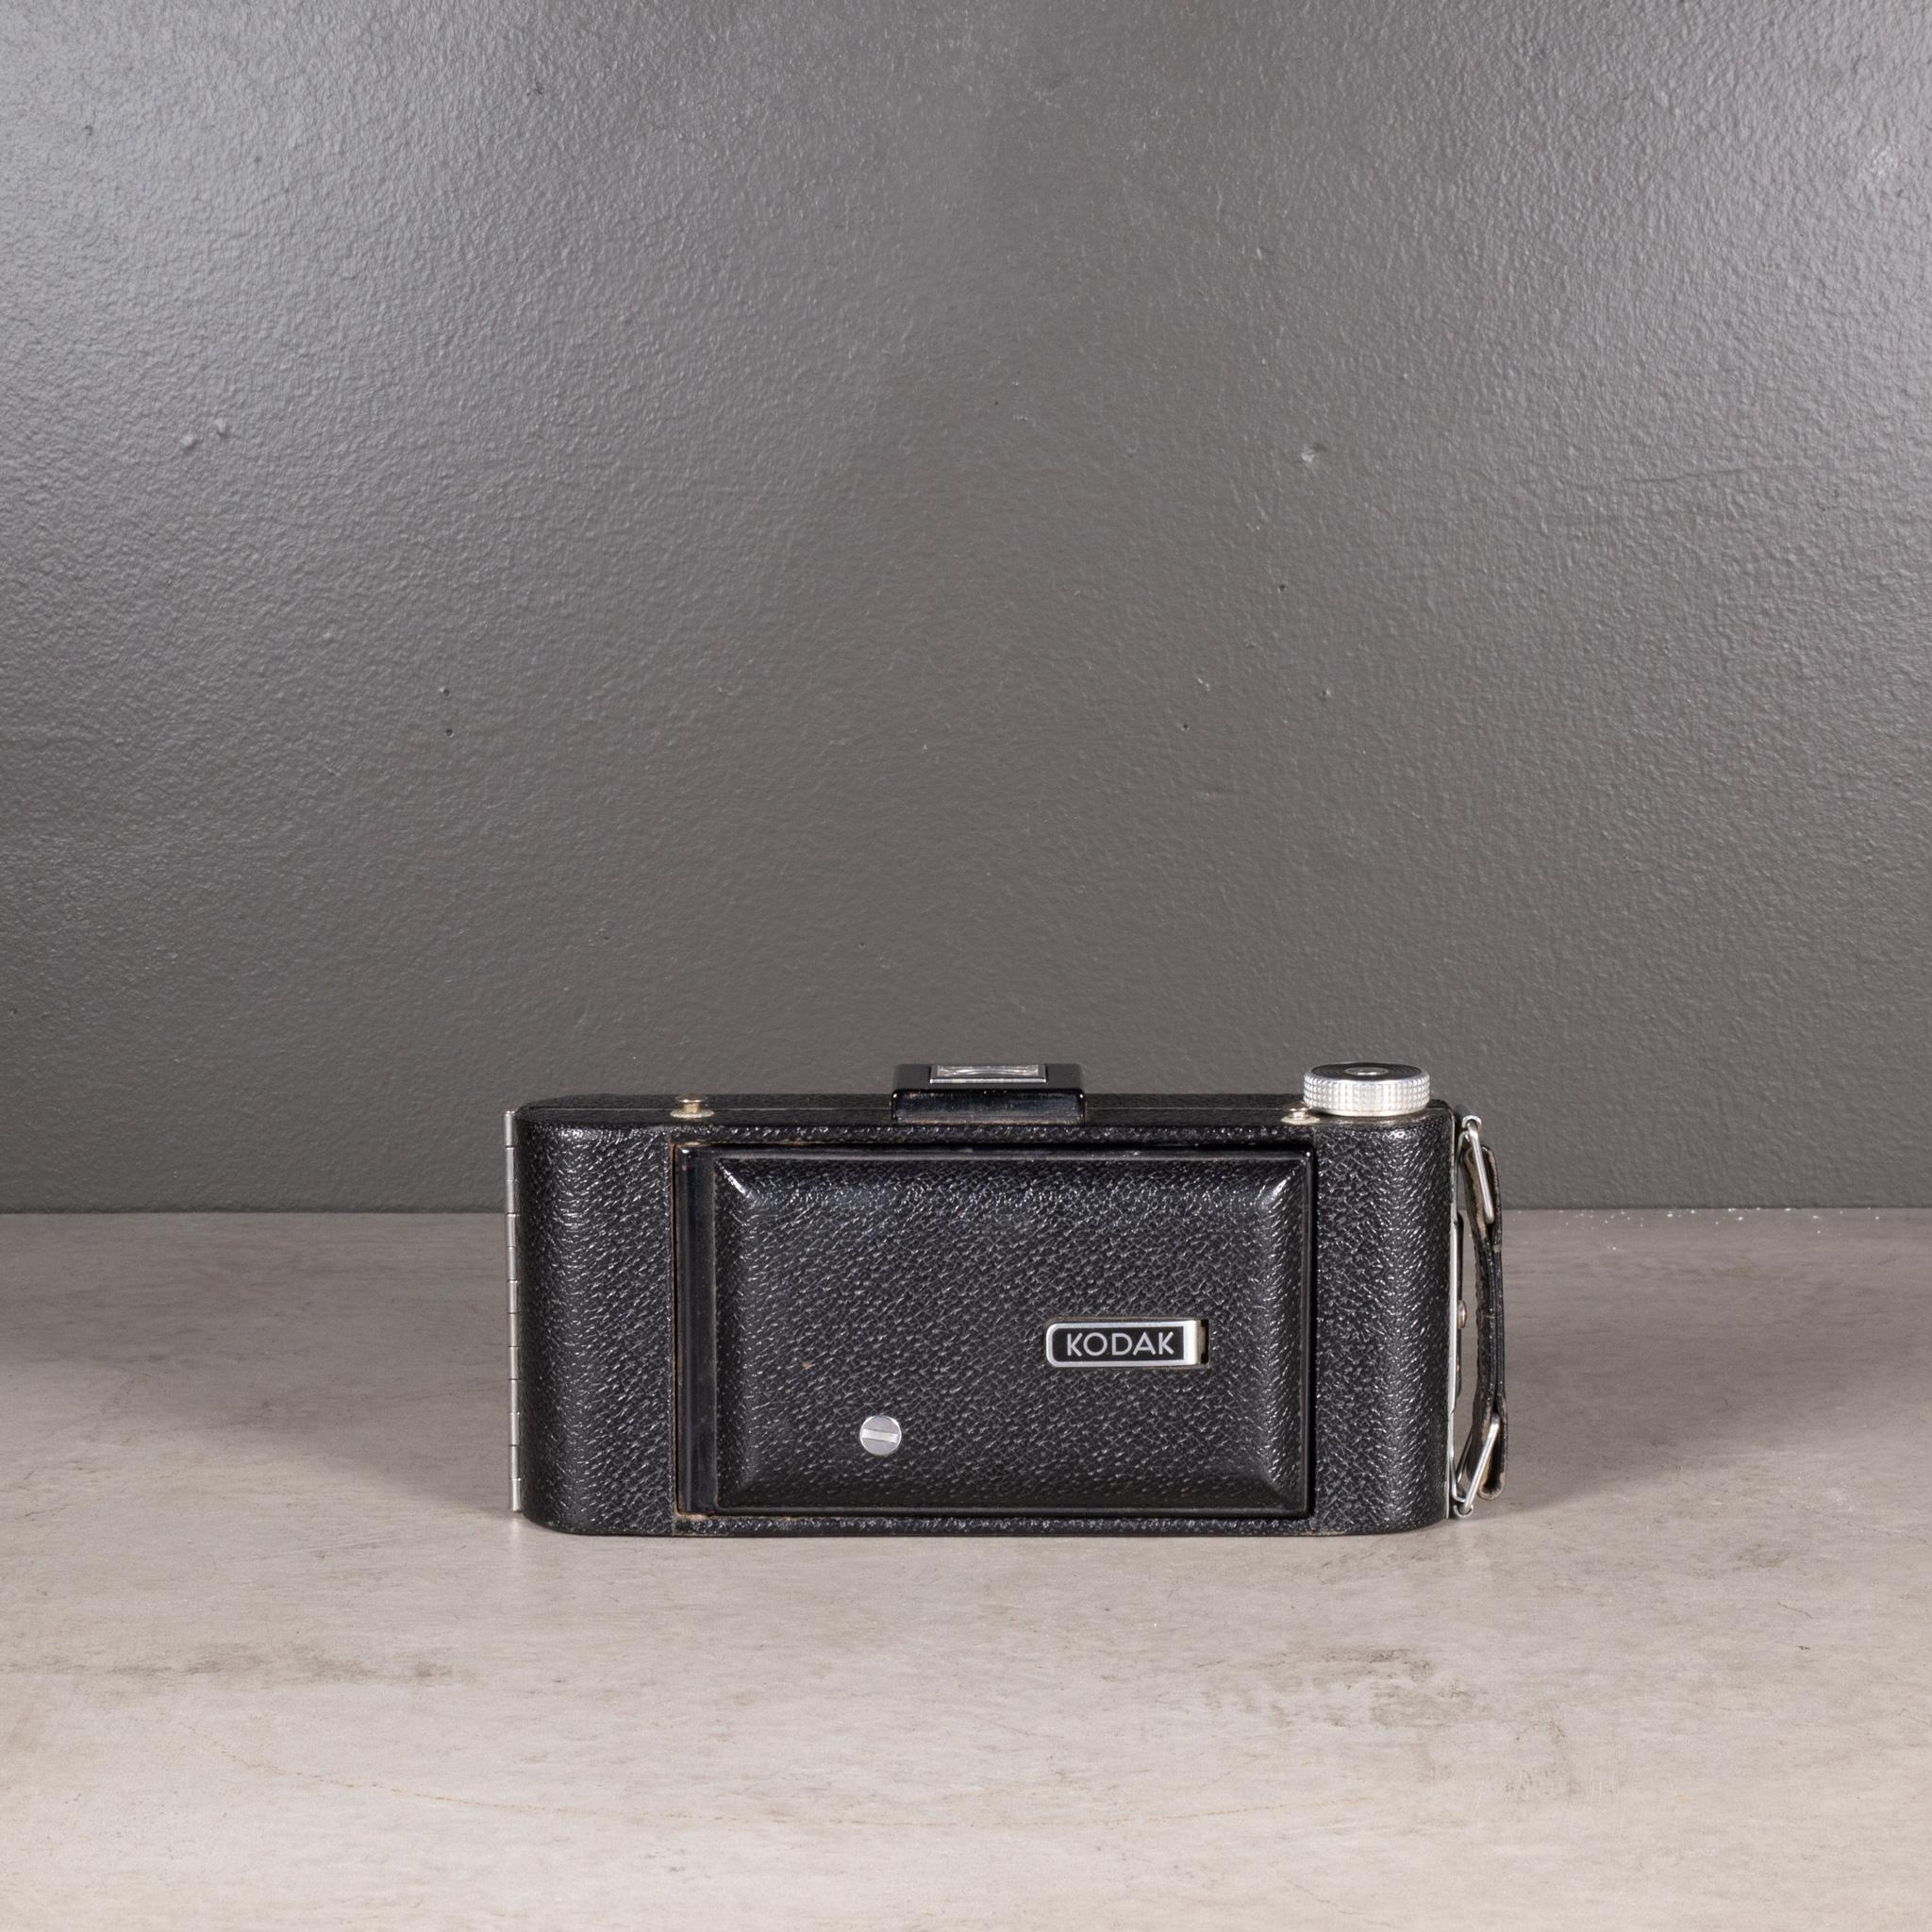 Métal Kodak Senior Six-16 Folding Camera Art Déco c.1937-1939 (expédition gratuite) en vente